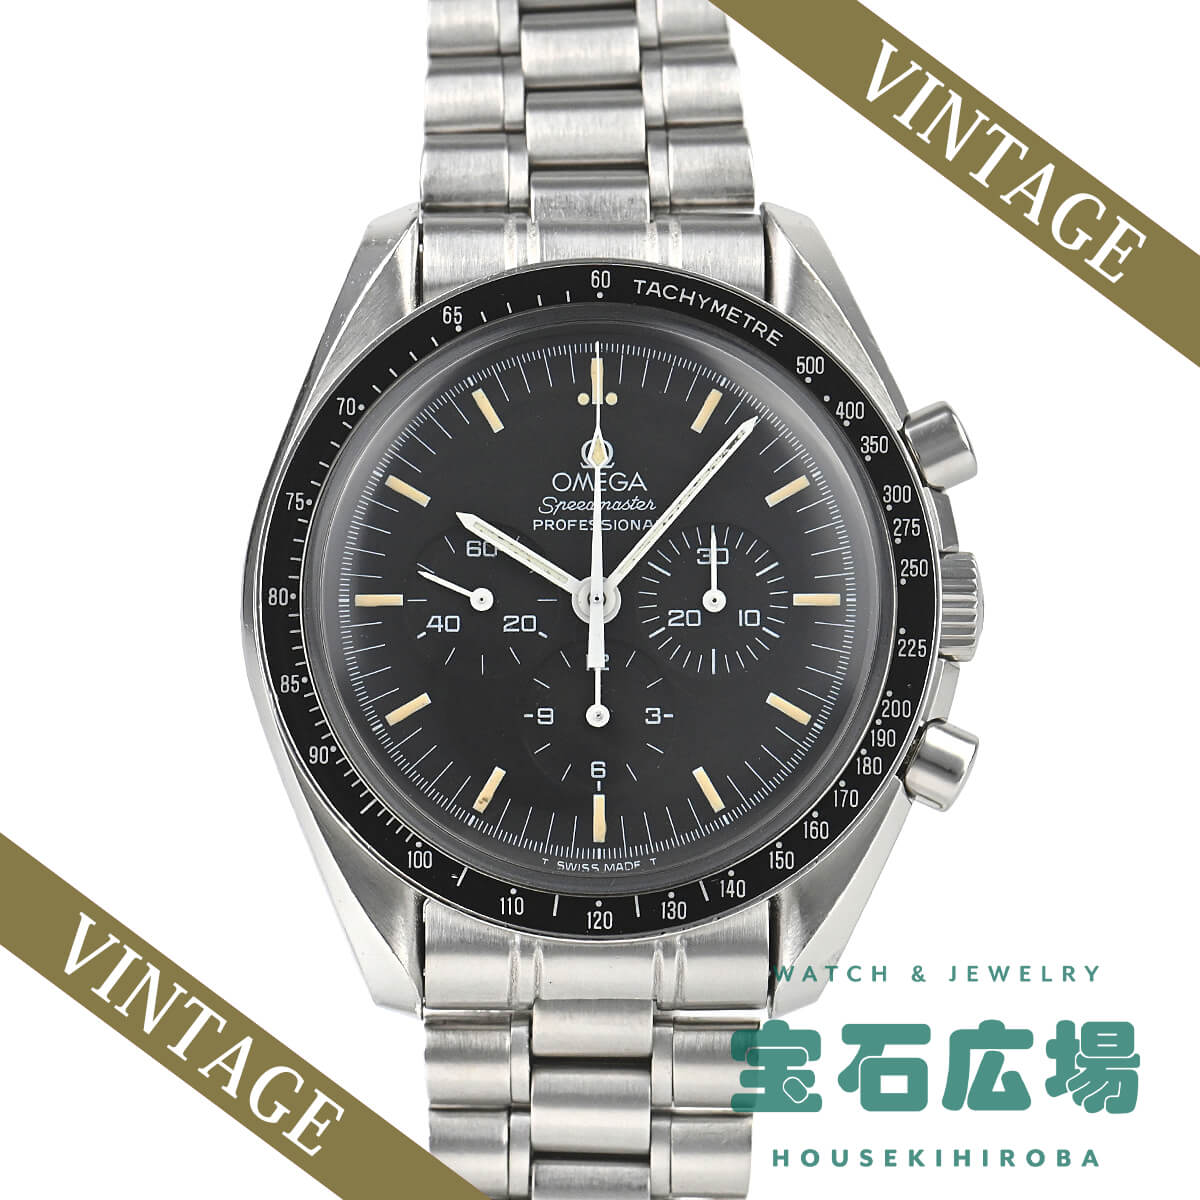 オメガ OMEGA スピードマスター プロフェッショナル アポロ11号20周年アメリカ限定モデル 限定2000本 3890-59 中古 メンズ 腕時計